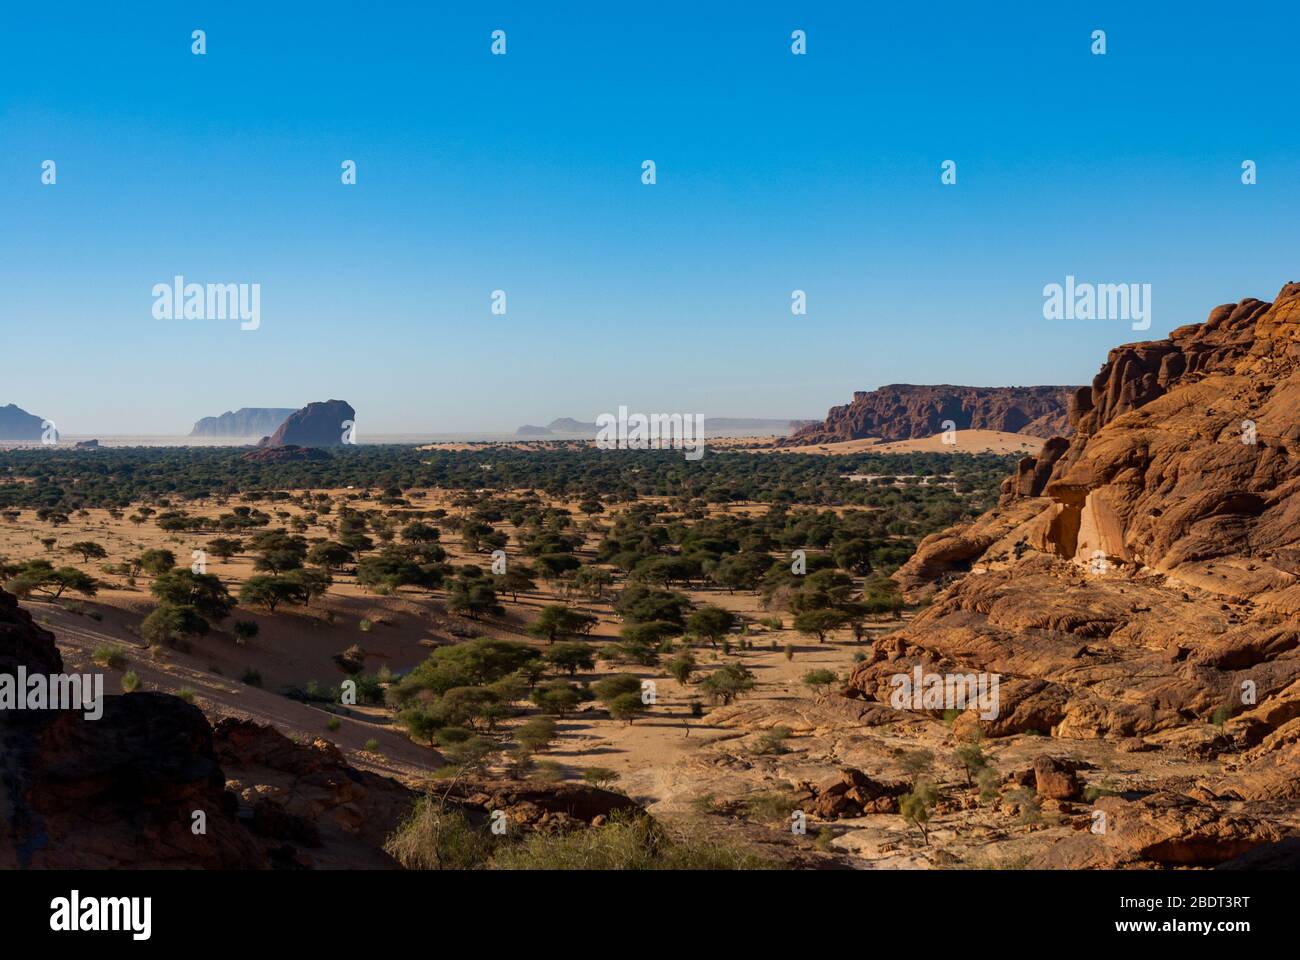 Ennedi plateau du Sahara dessert du Tchad. Végétation du désert, et formation de roches. Banque D'Images